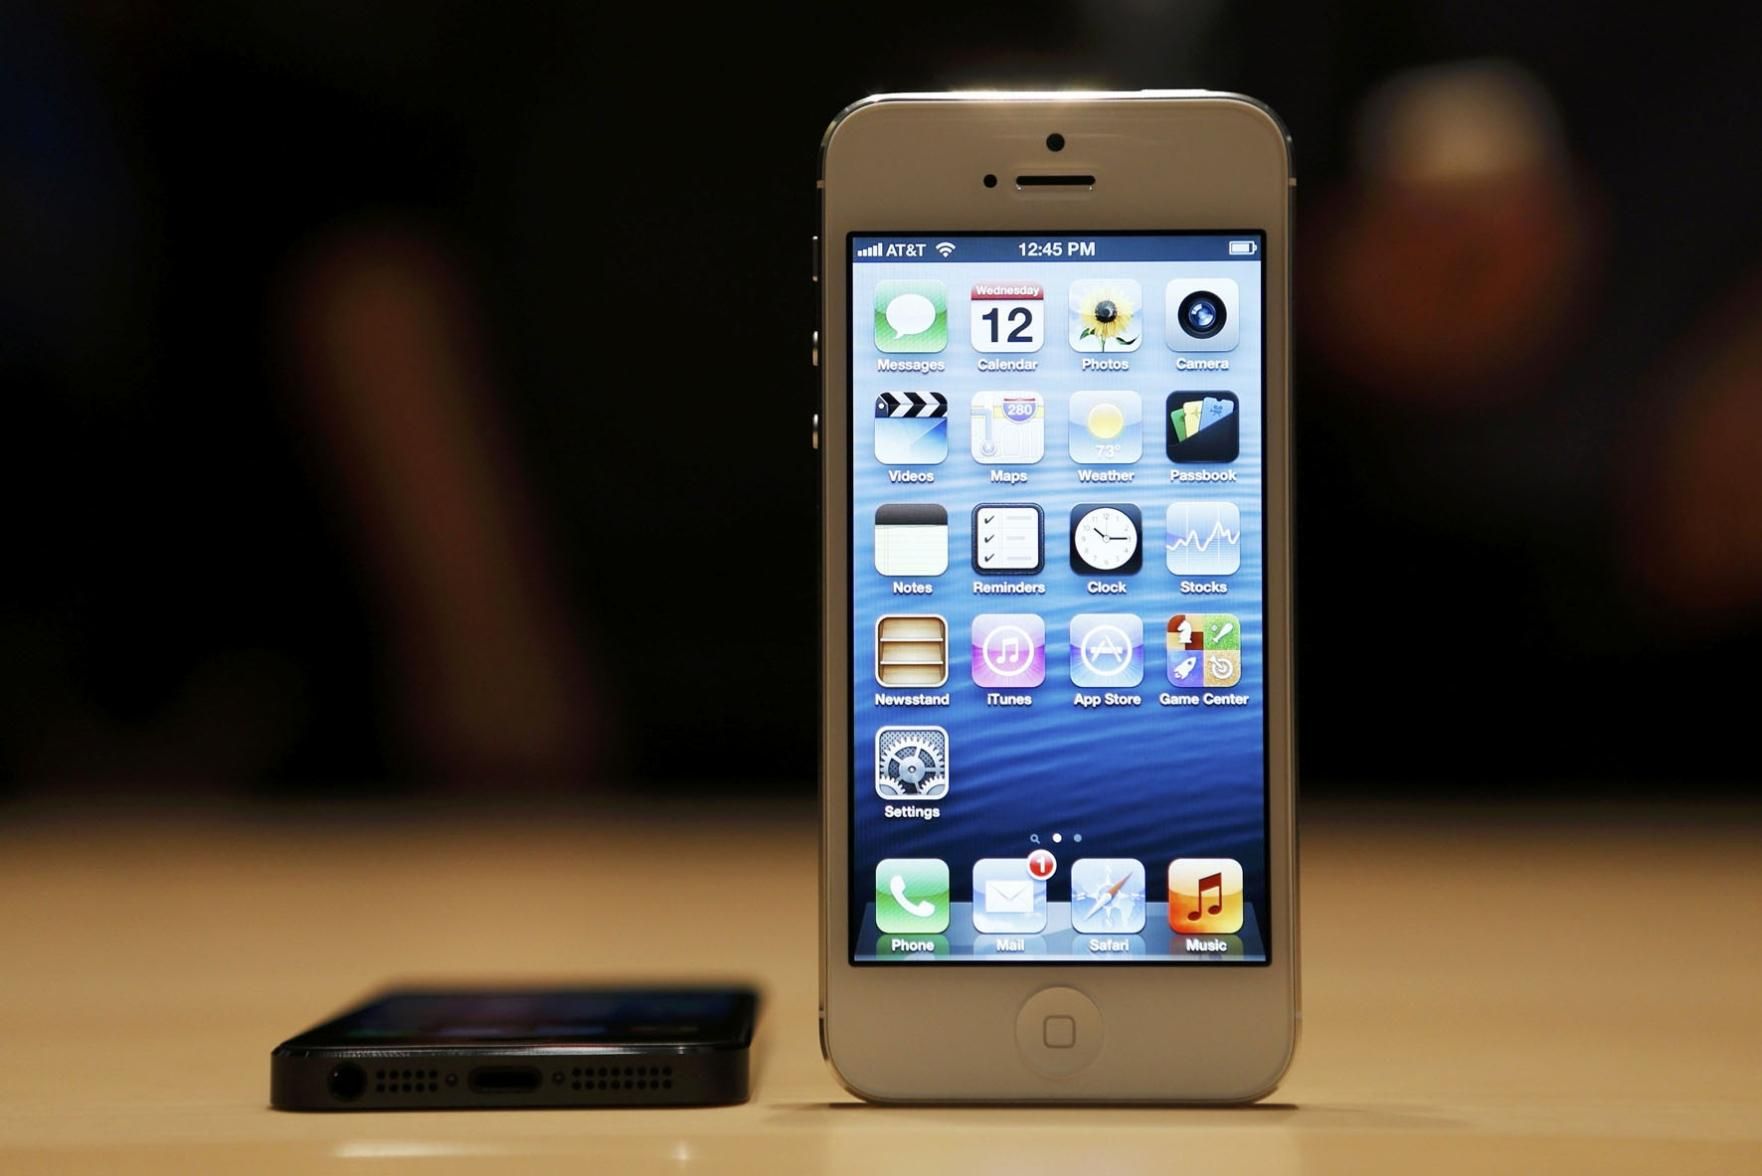 Falha no iOS 11 faz iPhone não reconhecer letra 'i', Tecnologia